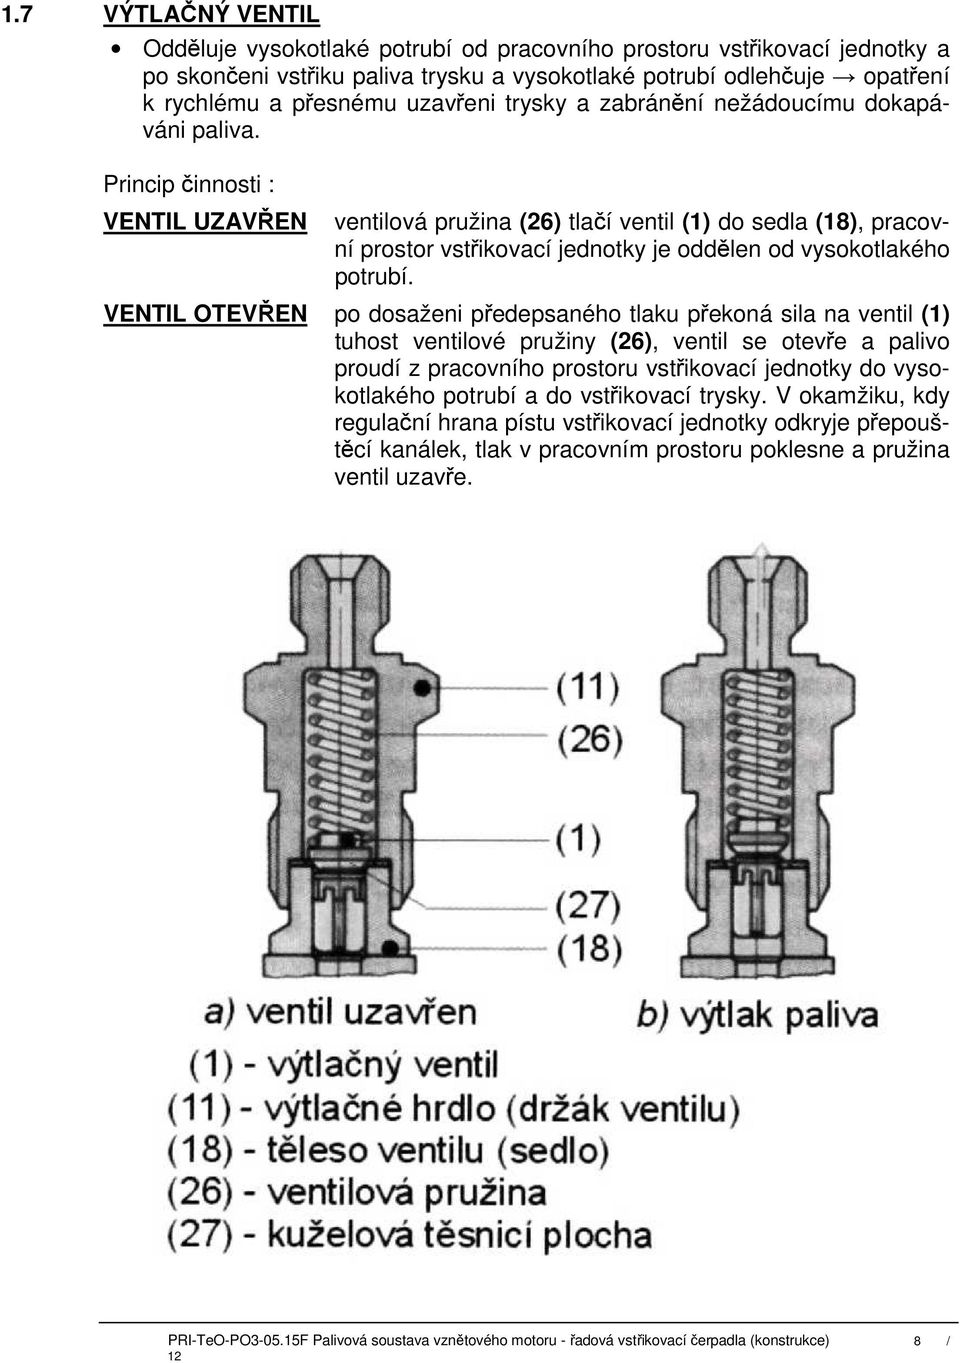 Princip činnosti : VENTIL UZAVŘEN ventilová pružina (26) tlačí ventil (1) do sedla (18), pracovní prostor vstřikovací jednotky je oddělen od vysokotlakého potrubí.